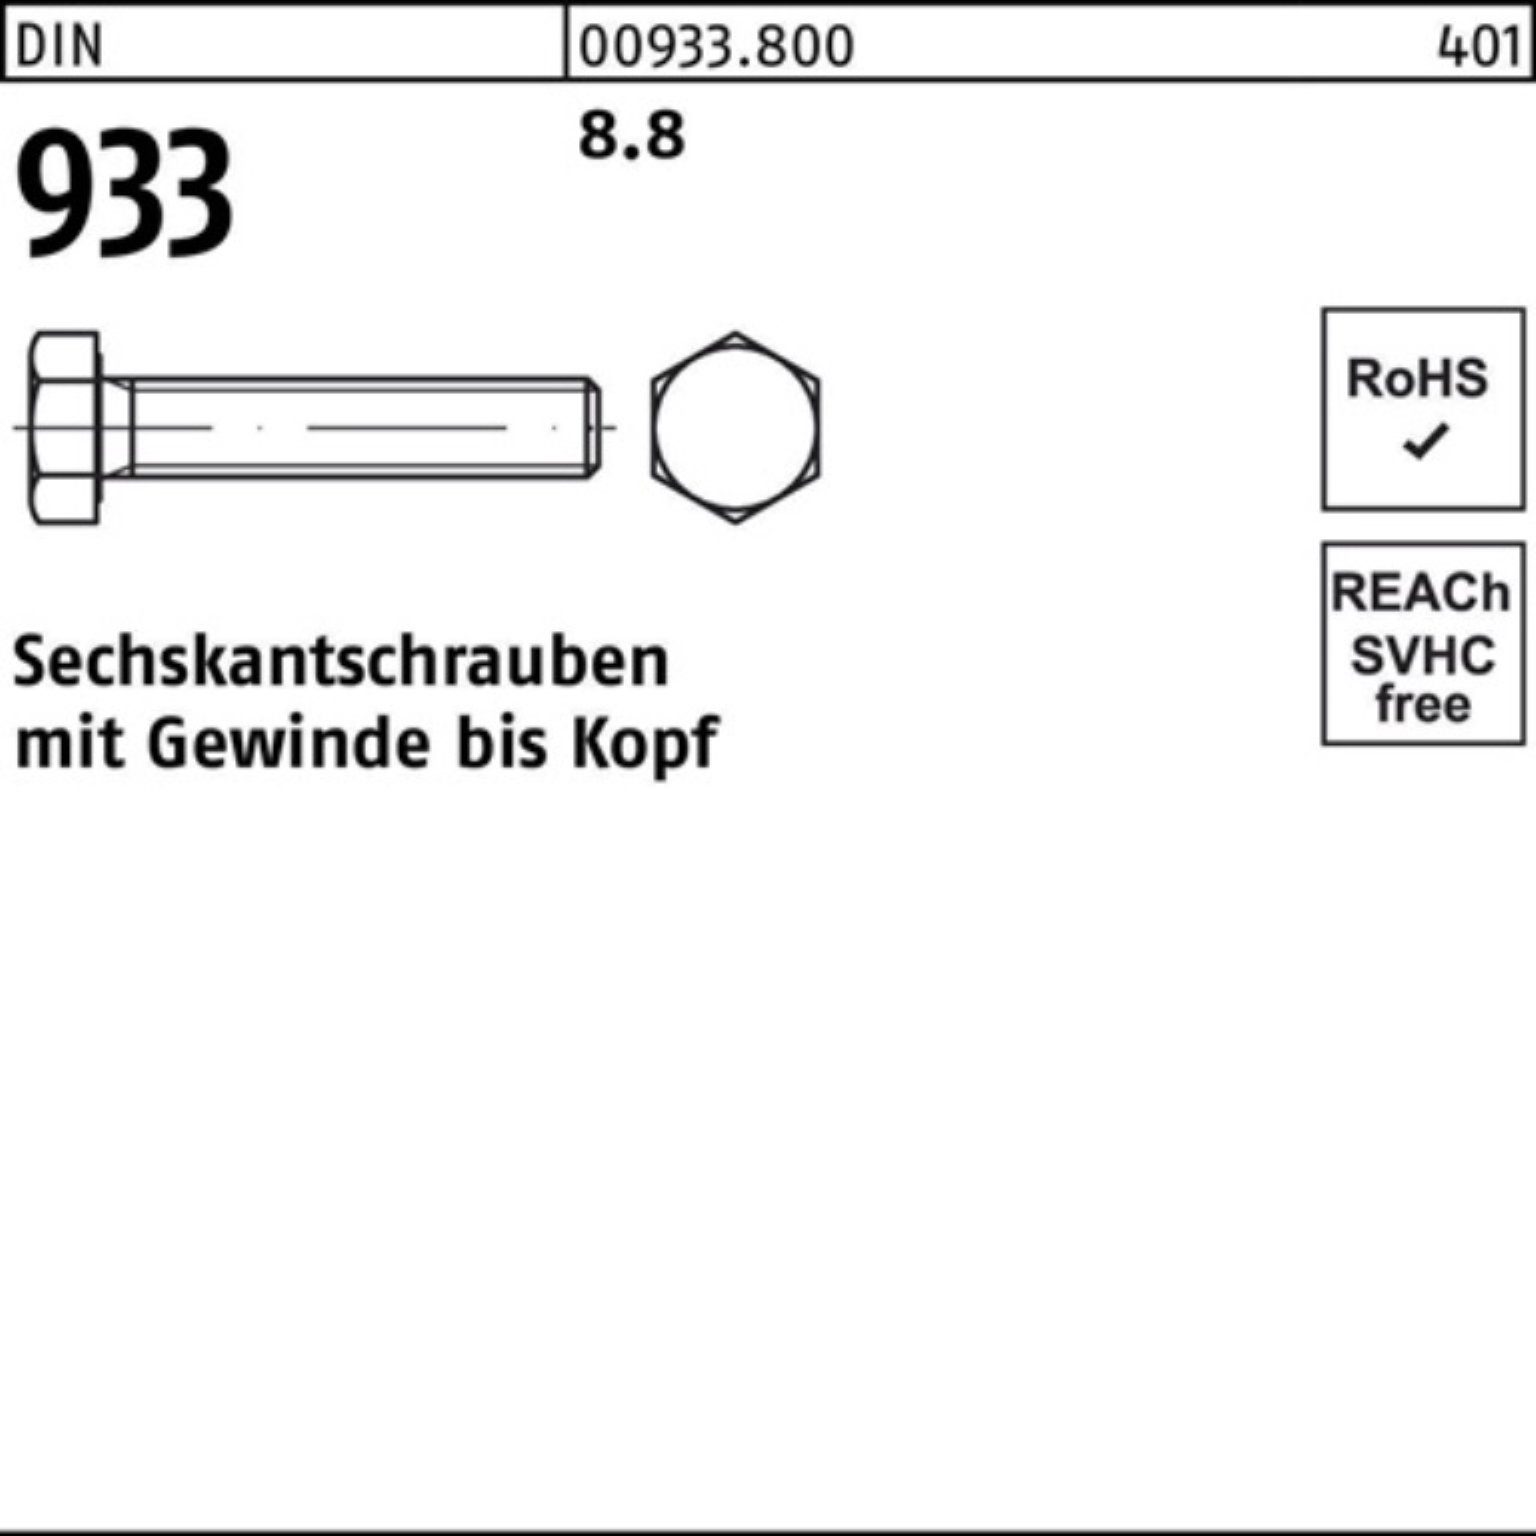 Reyher Sechskantschraube DIN M22x 933 Sechskantschraube 100er Stück 933 DIN 8.8 30 Pack 25 VG